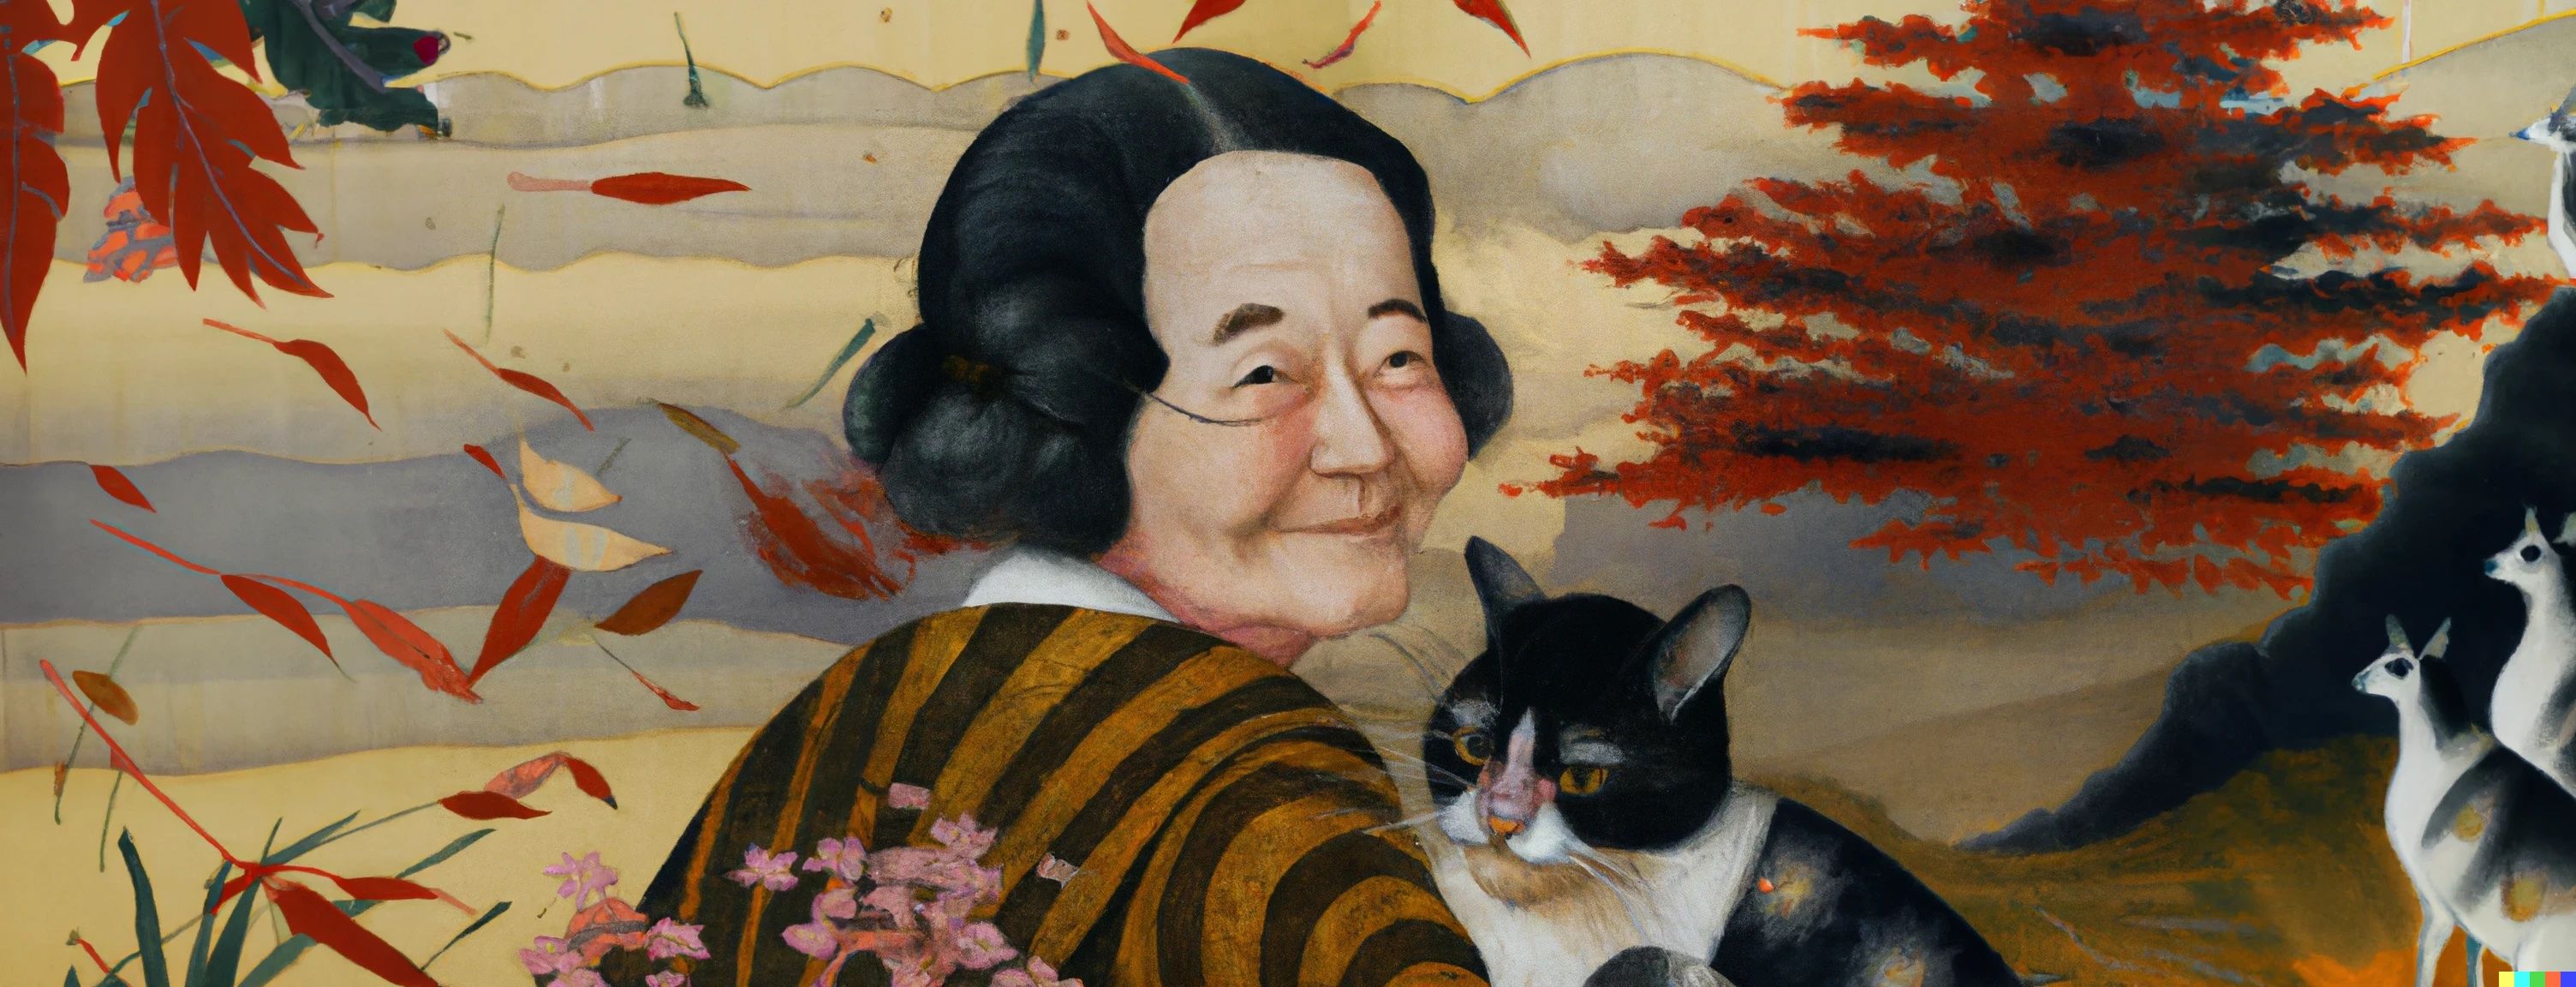 一幅由 AI 生成的绘画，描绘了一位女性和她的猫在日本风景的中心，由 Dall-E 制作